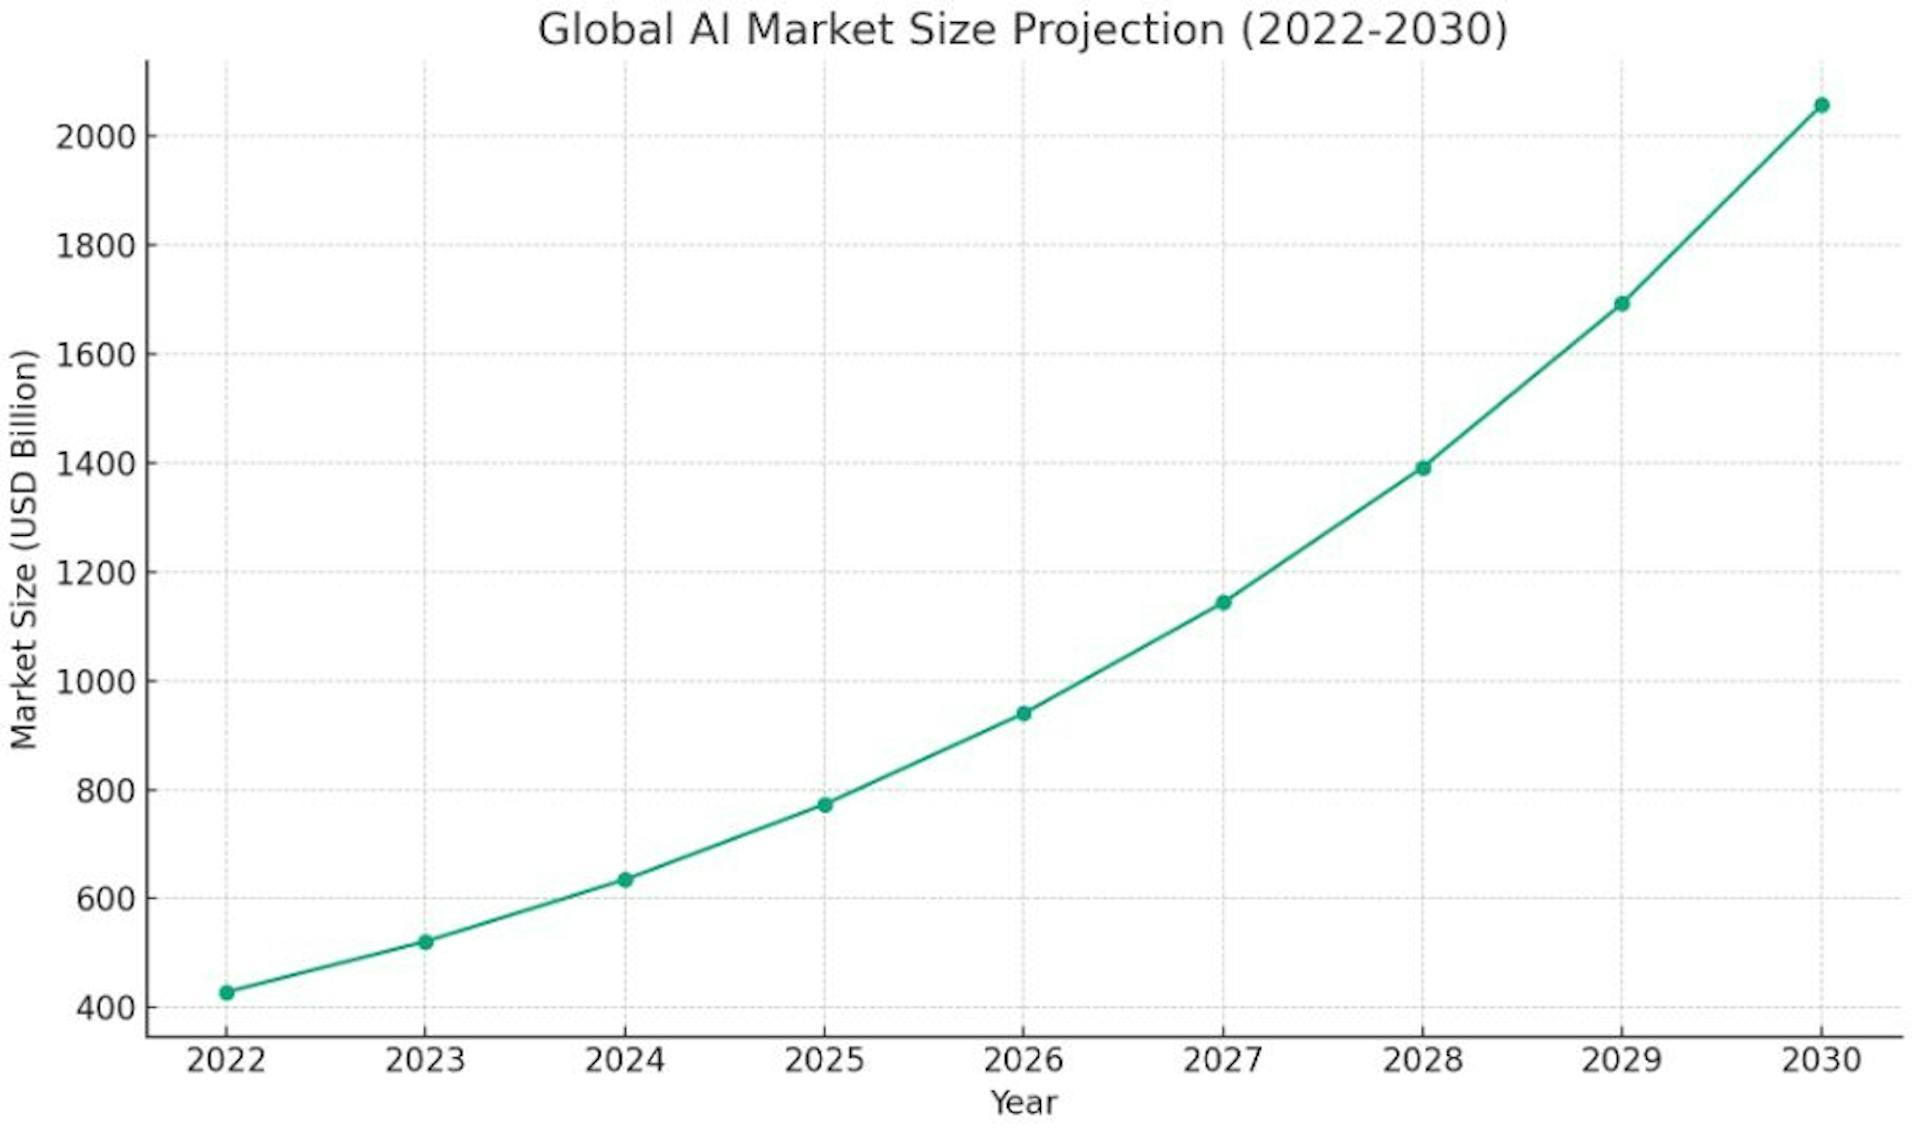 Gráfico que ilustra el crecimiento proyectado del tamaño del mercado global de IA de 2022 a 2030.